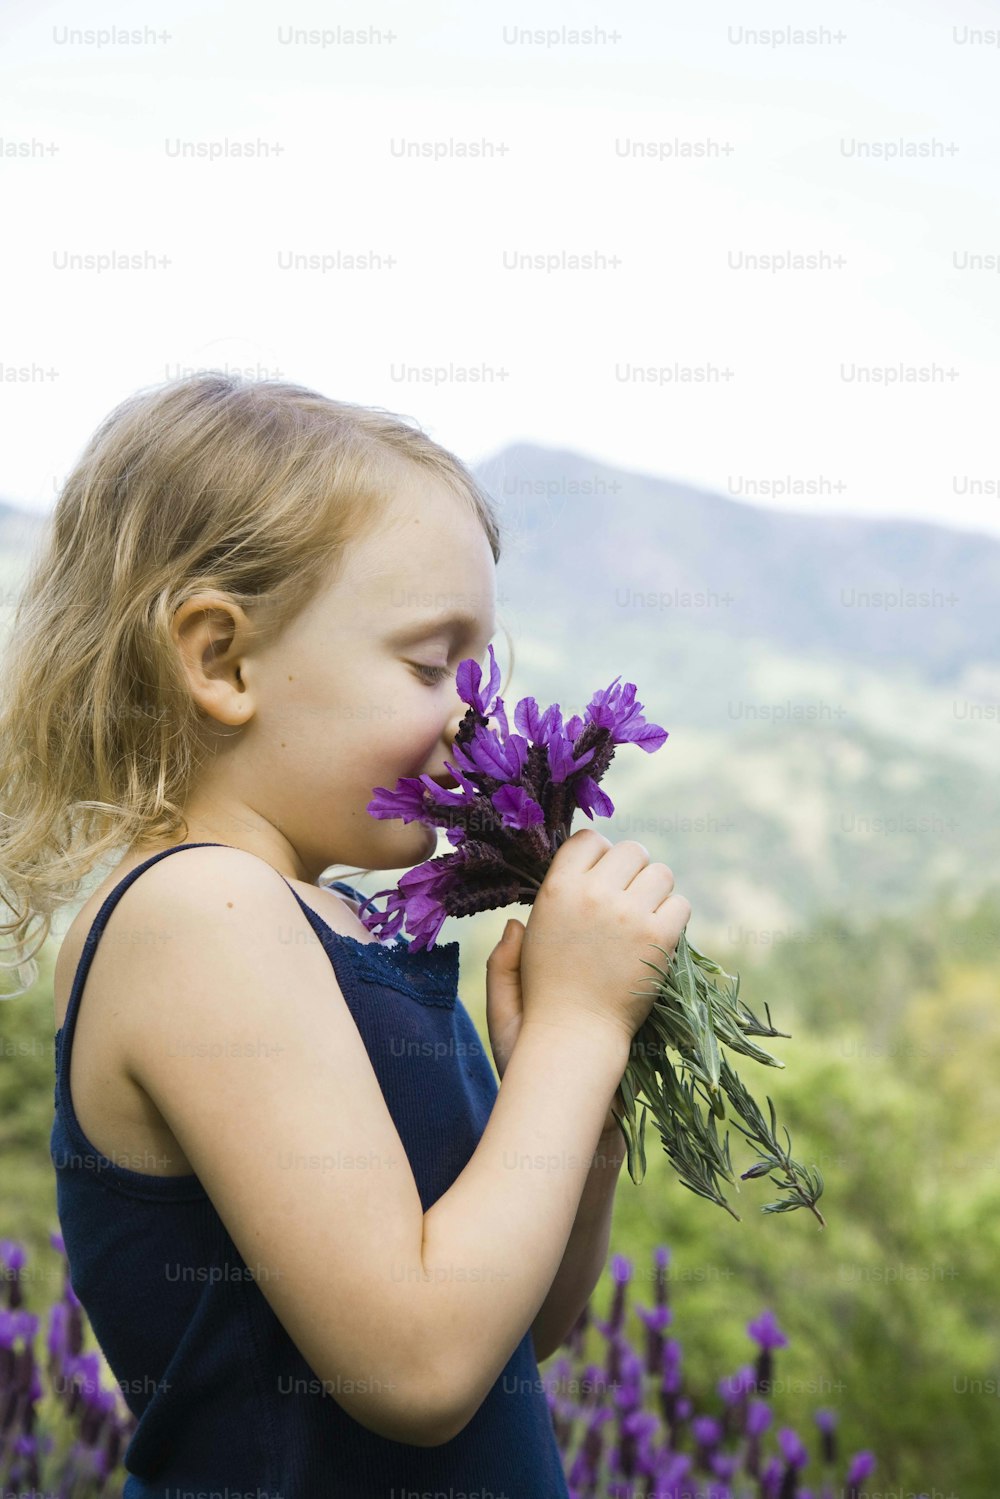 紫色の花の束を嗅ぐ少女